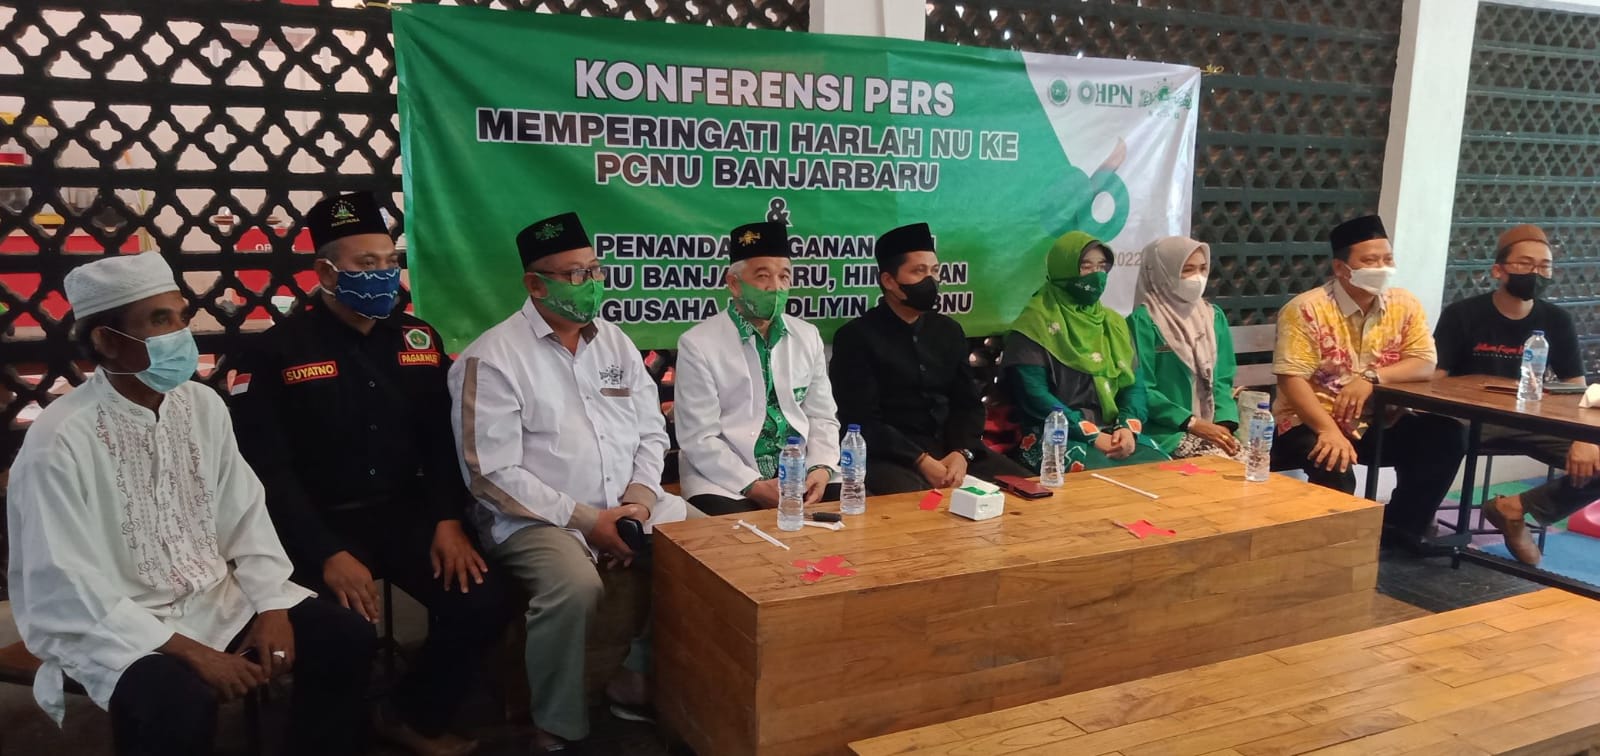 Peringati Harlah NU ke-96, PCNU Banjarbaru Gelar Kegiatan Sosial Hingga Bantuan Hukum